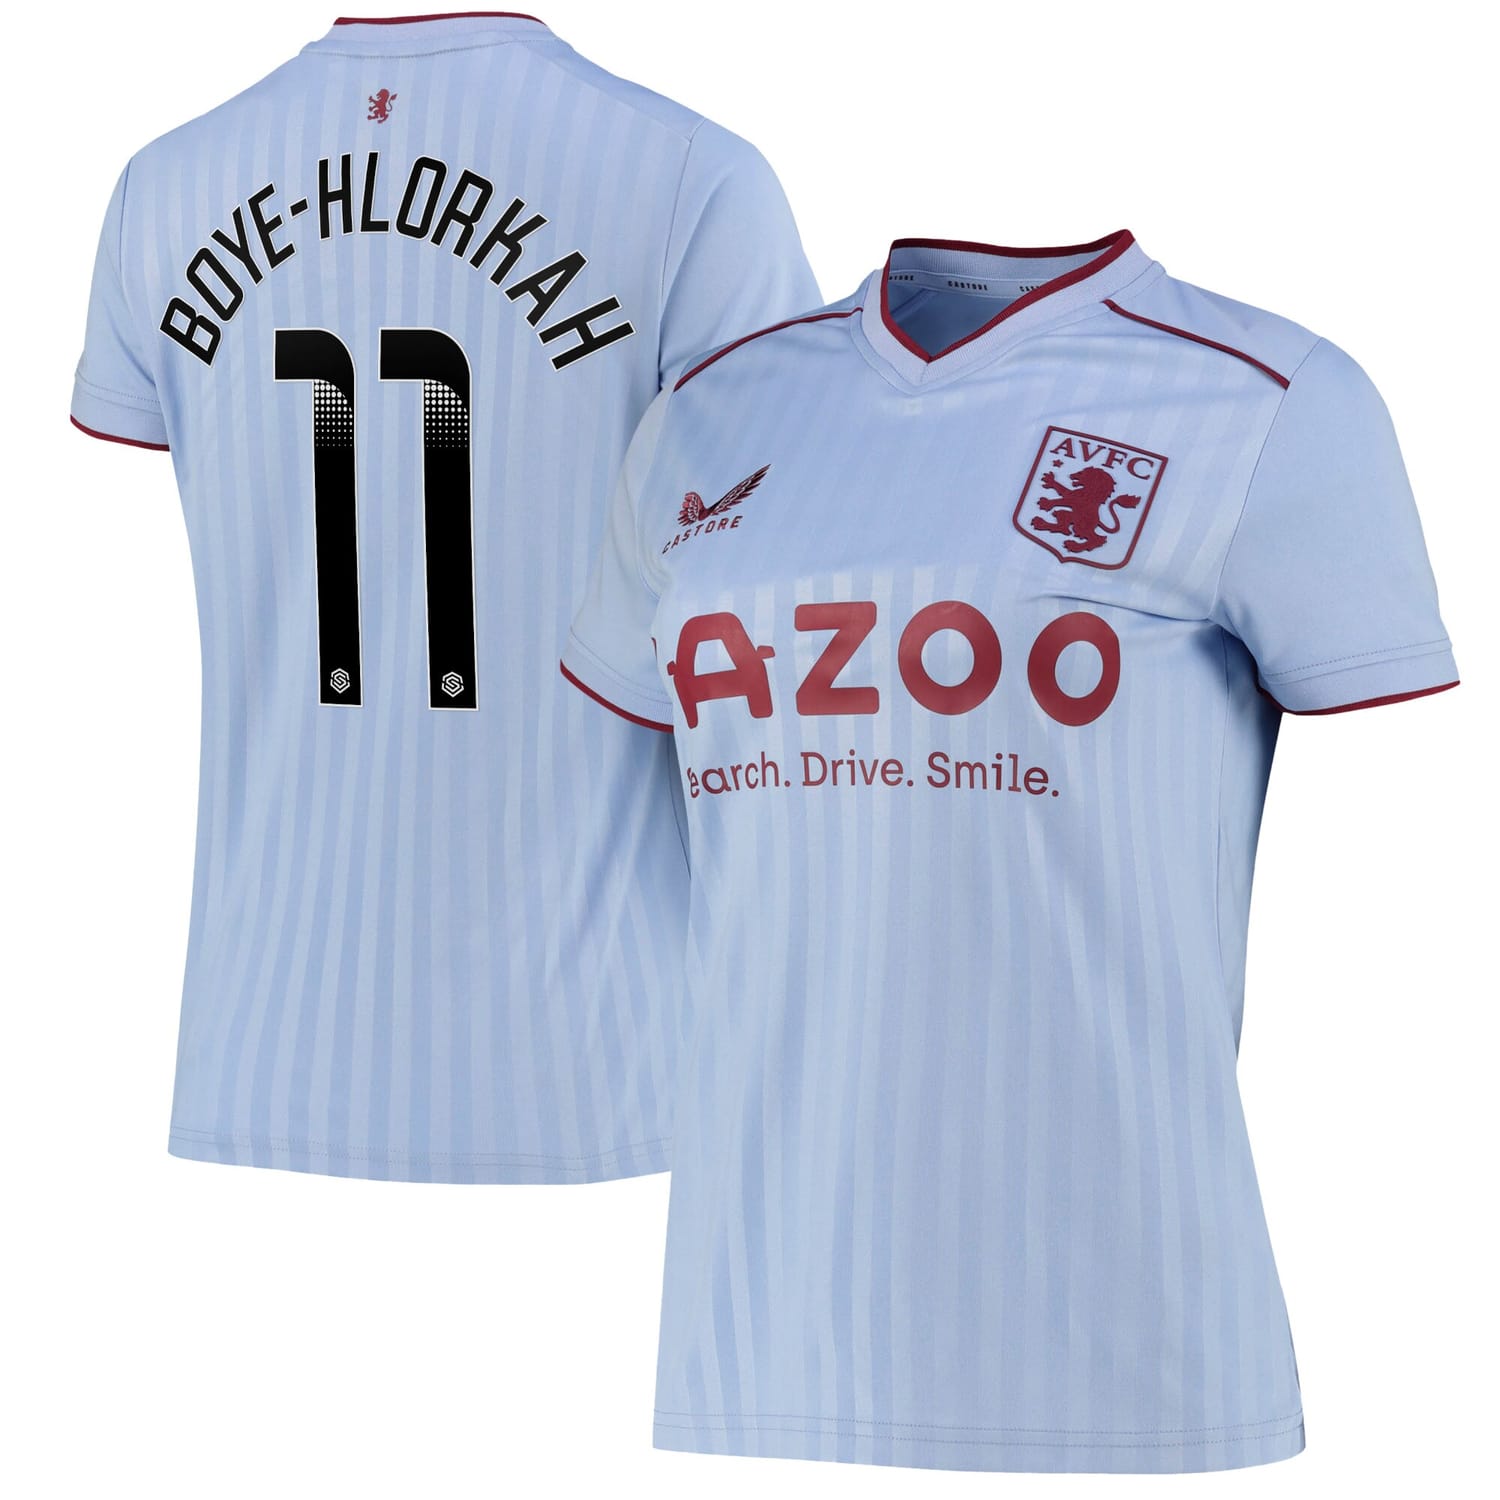 Premier League Aston Villa Away WSL Jersey Shirt 2022-23 player Chantelle Boye-Hlorkah 11 printing for Women